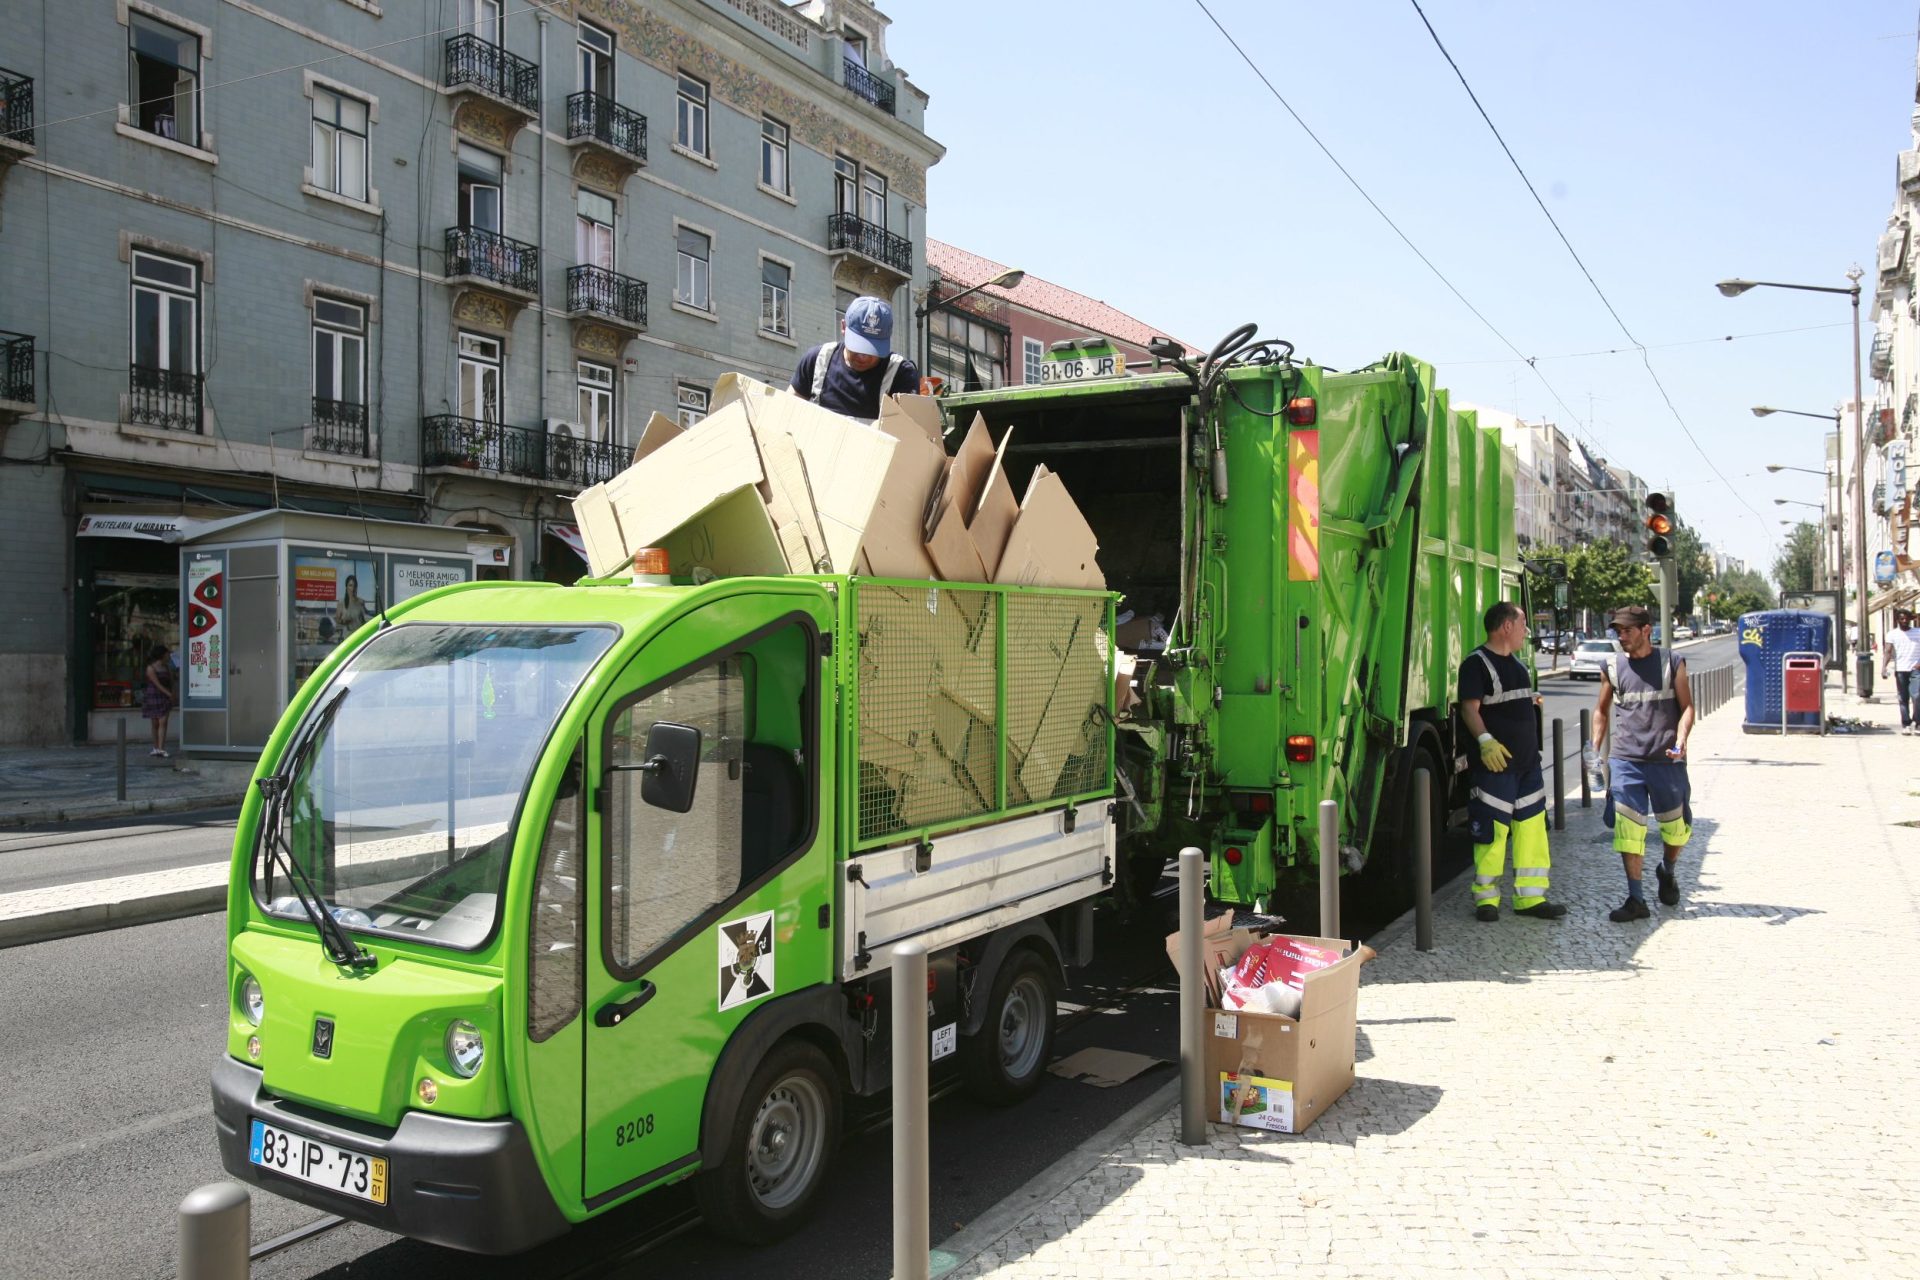 Aplicação permite reportar buracos e lixo acumulado na Estrela, em Lisboa